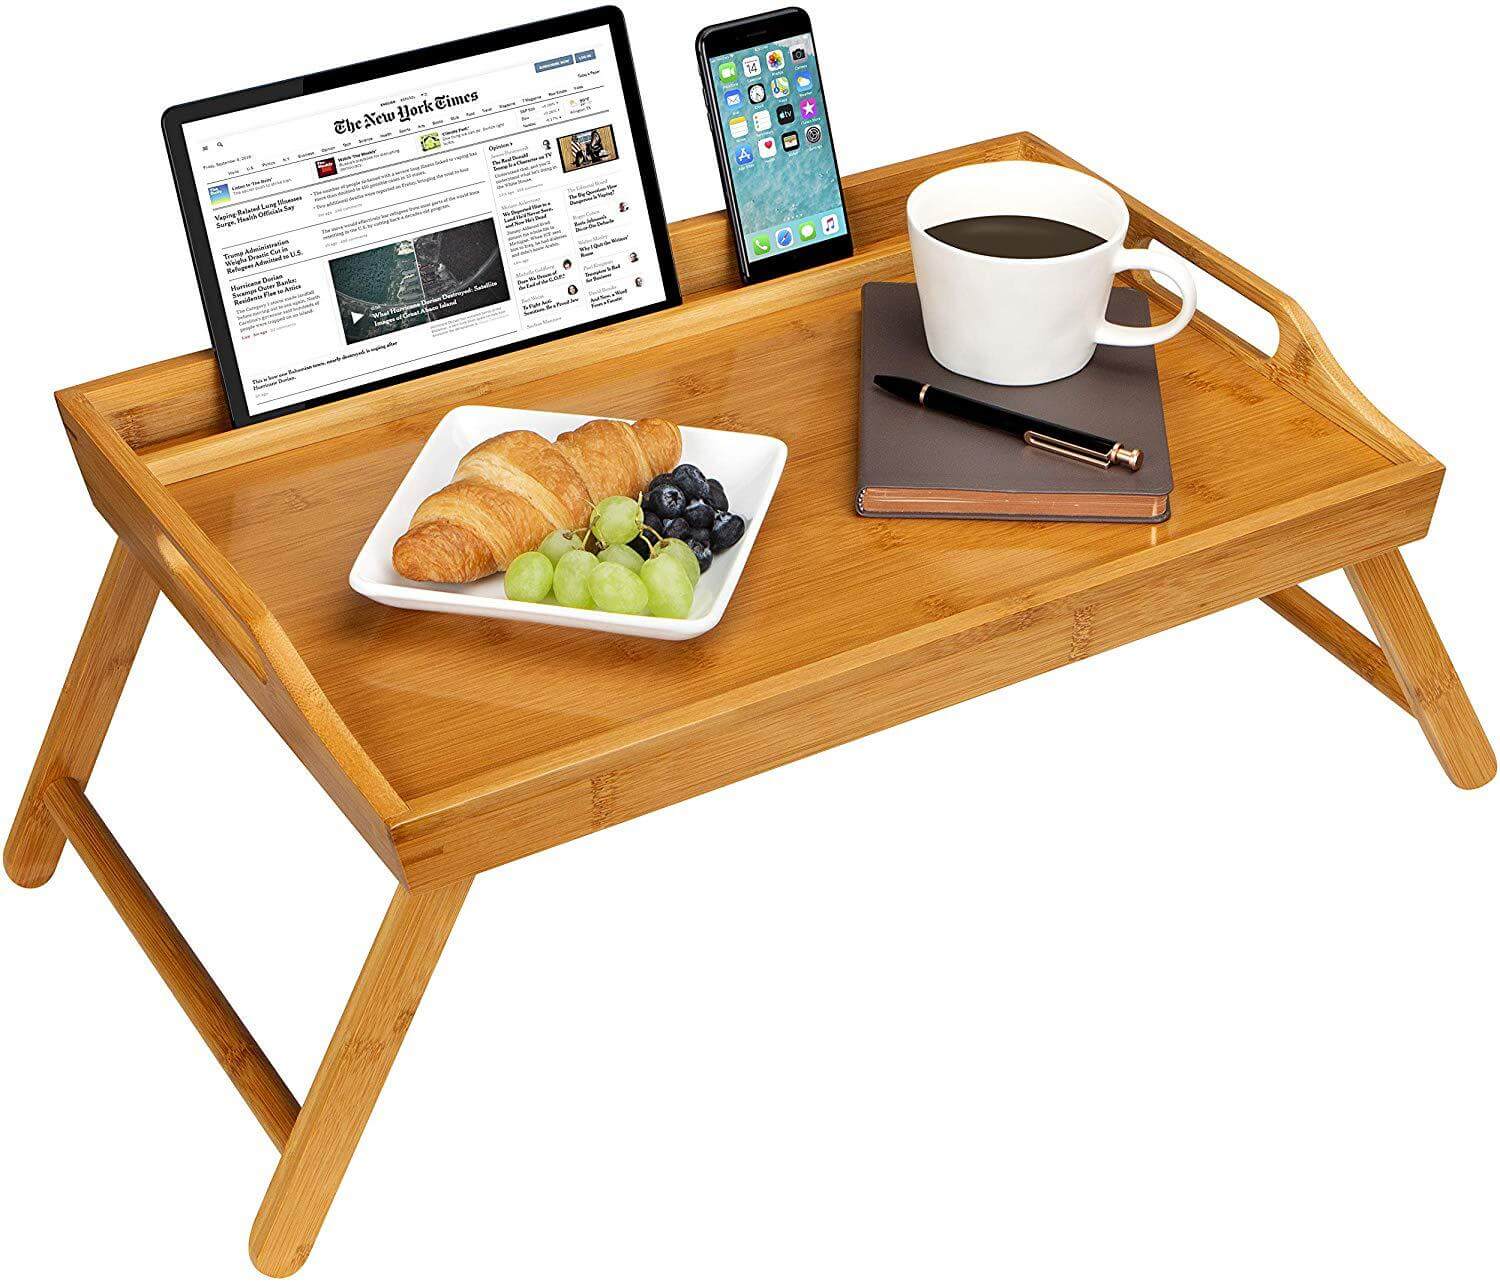 breakfast bed tray